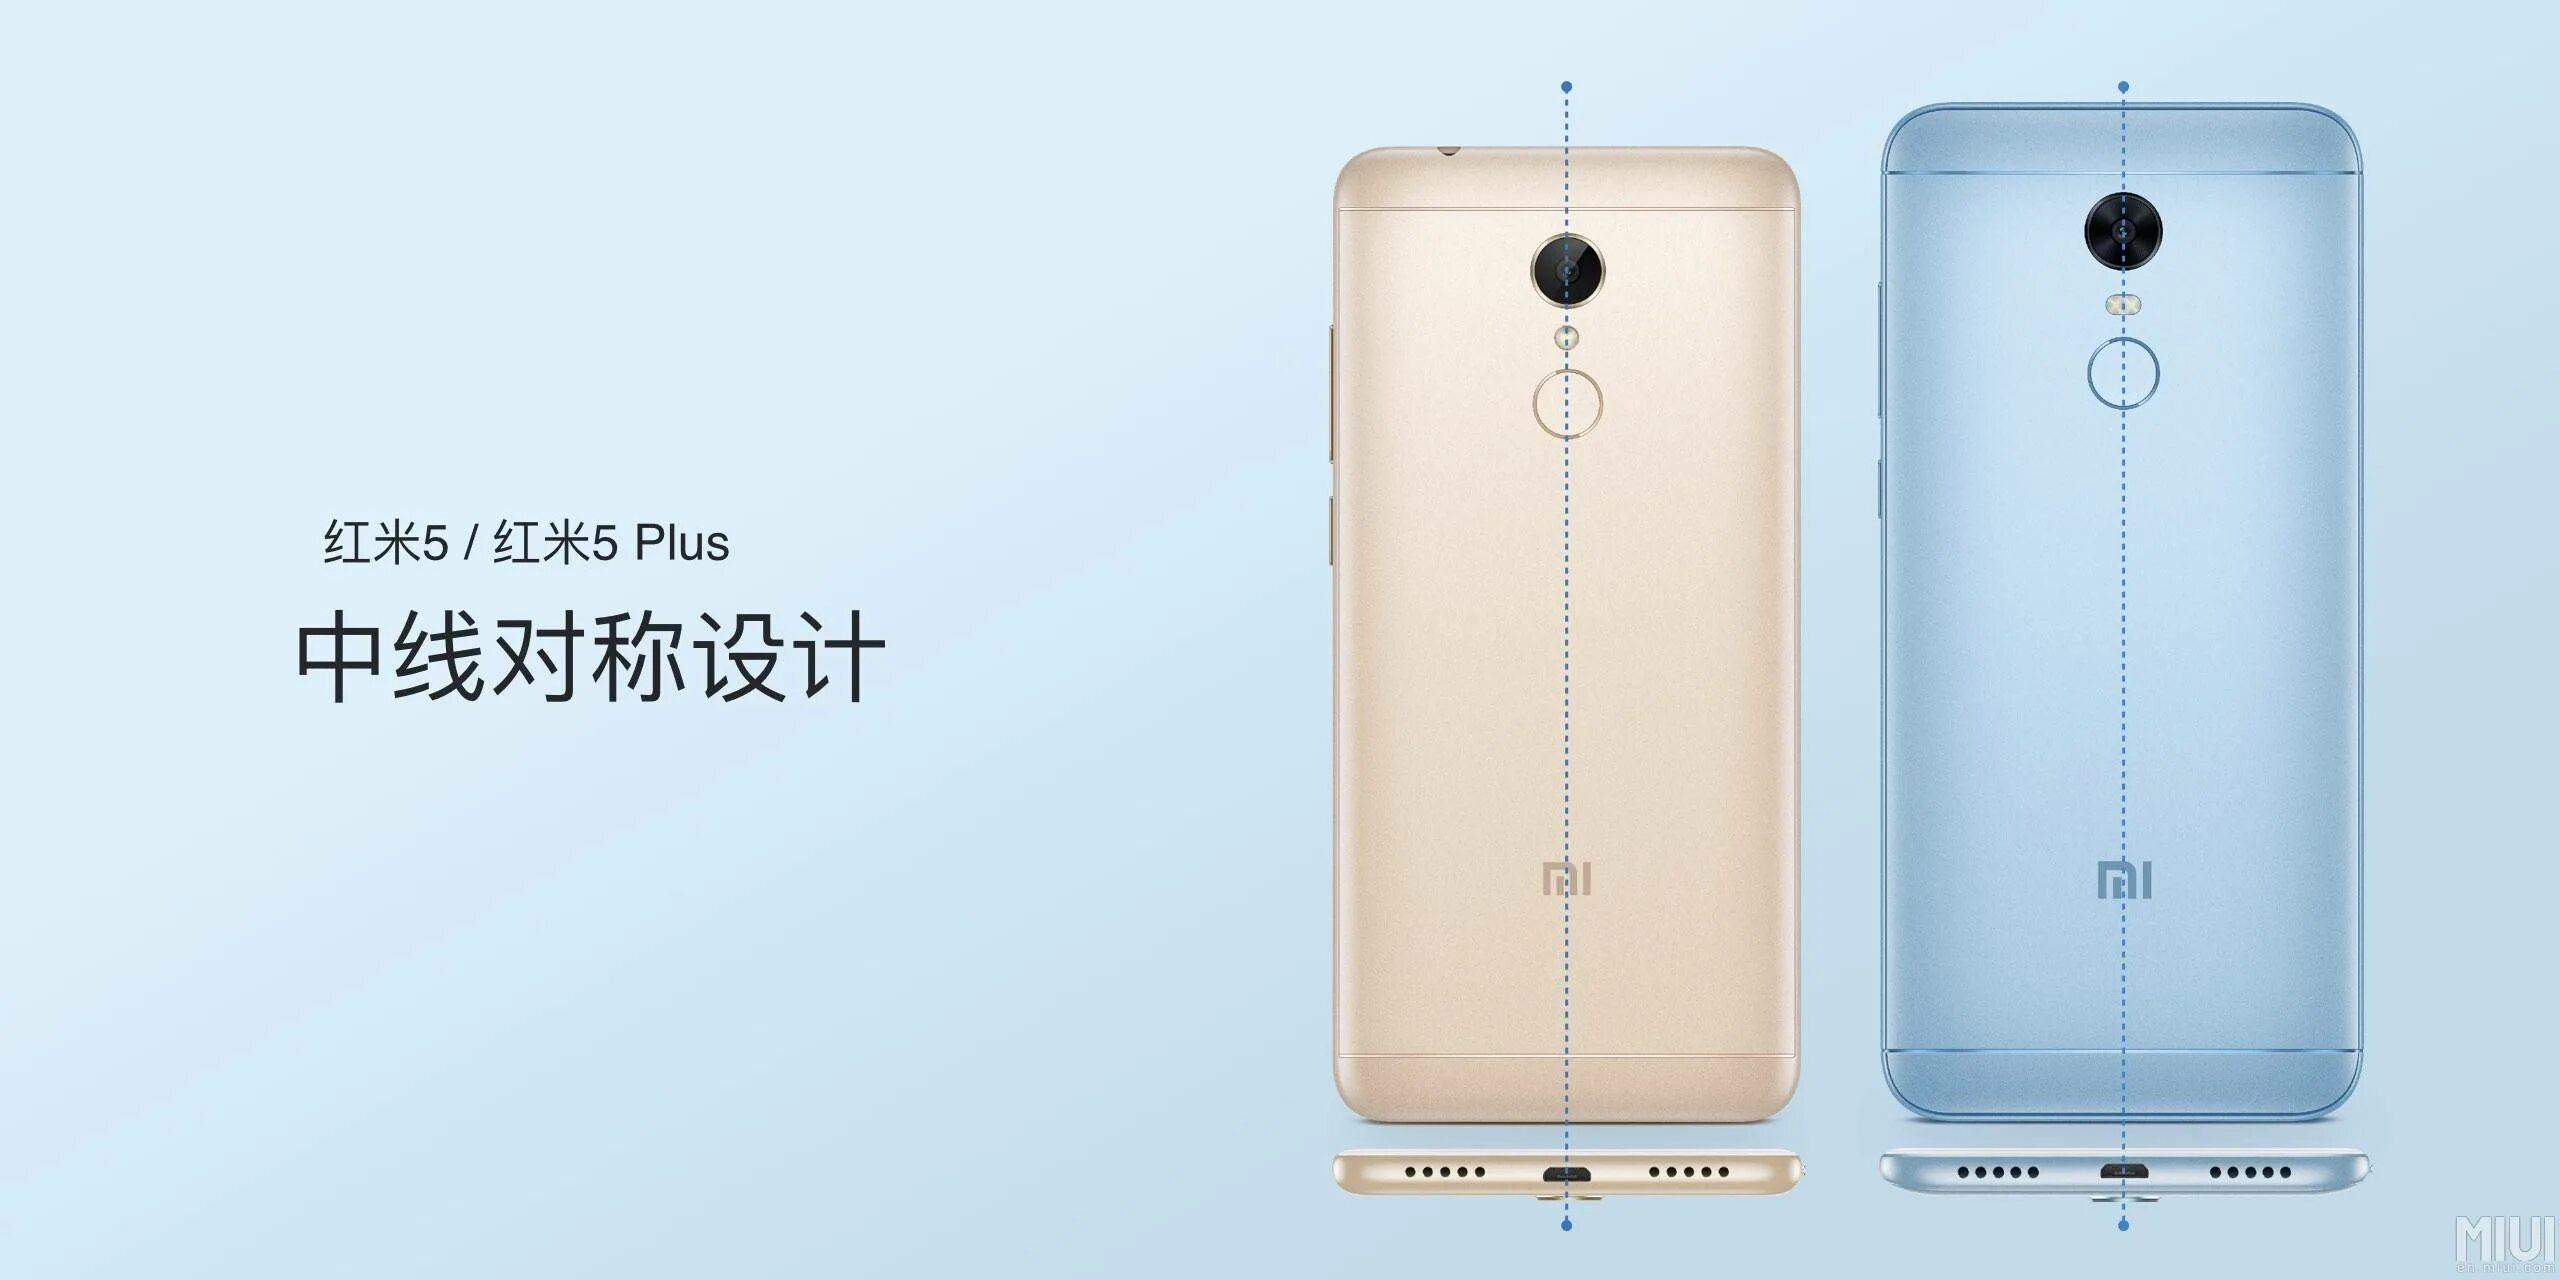 Длина телефона редми. Xiaomi Redmi 5 Plus. Redmi 5 габариты. Redmi 5 Plus Размеры. Ксиоми редми 5 плюс размер.